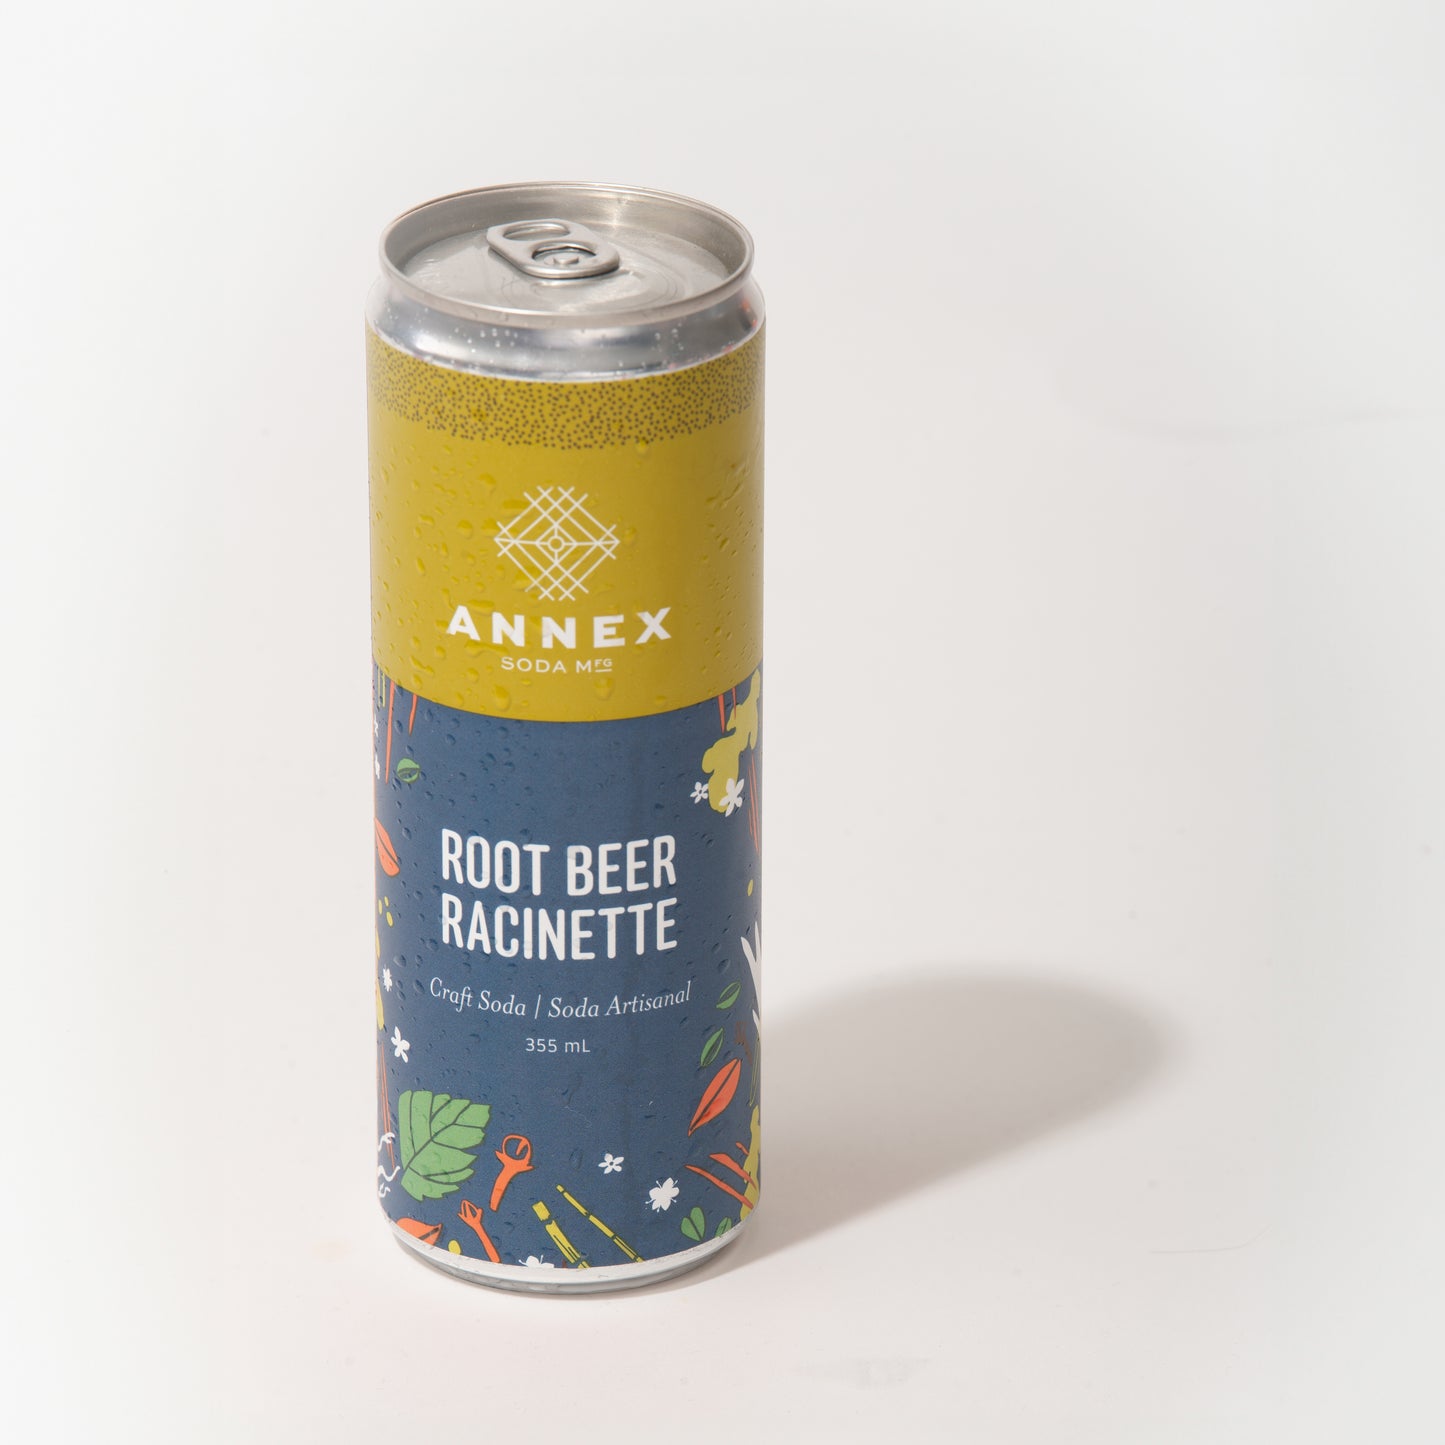 Root Beer - 4 Pack